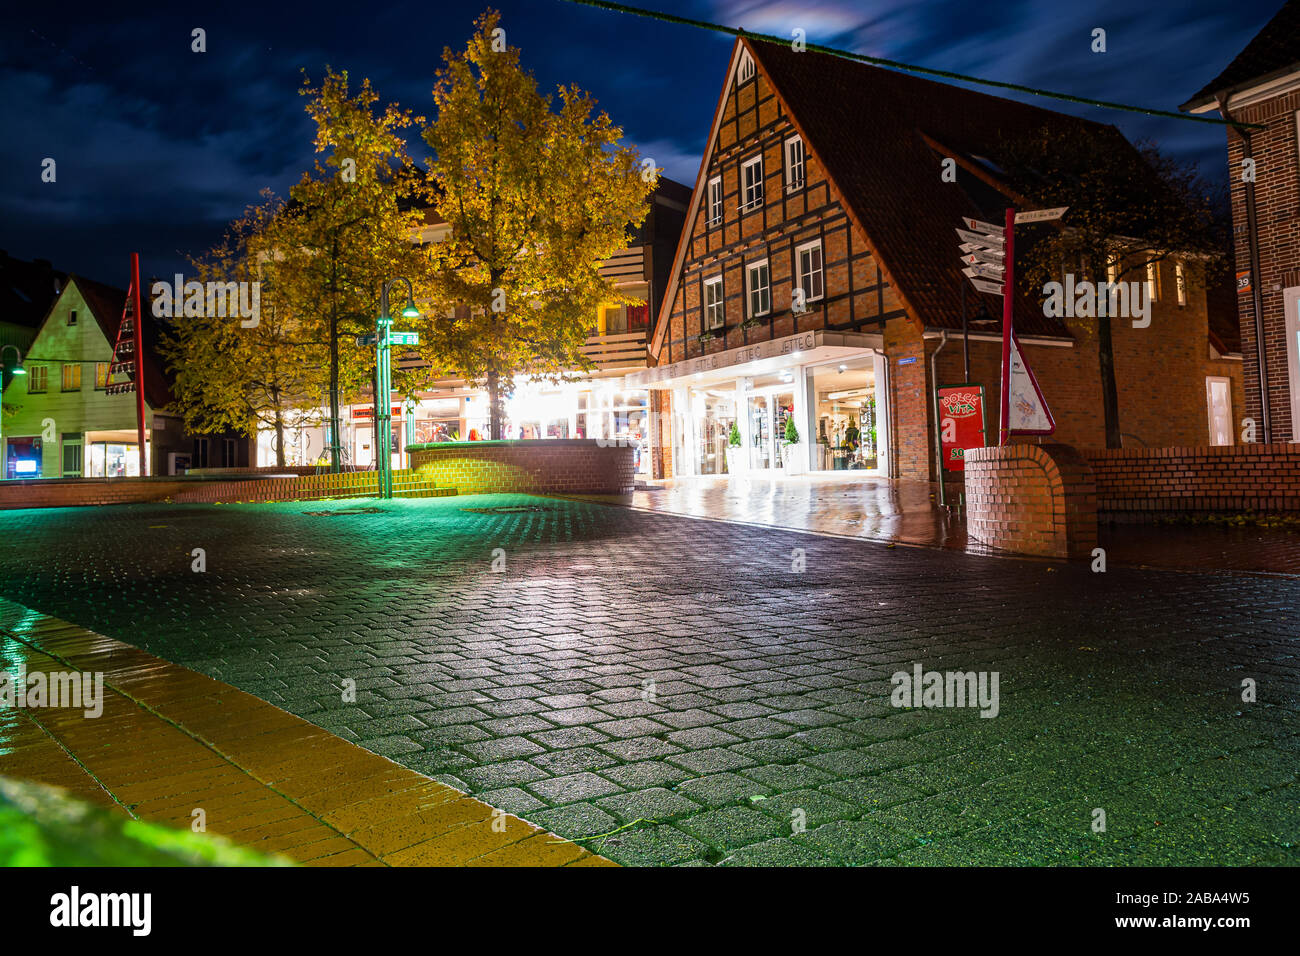 Soltau, Allemagne - le 12 novembre 2019. L'architecture allemande traditionnelle dans la nuit Banque D'Images